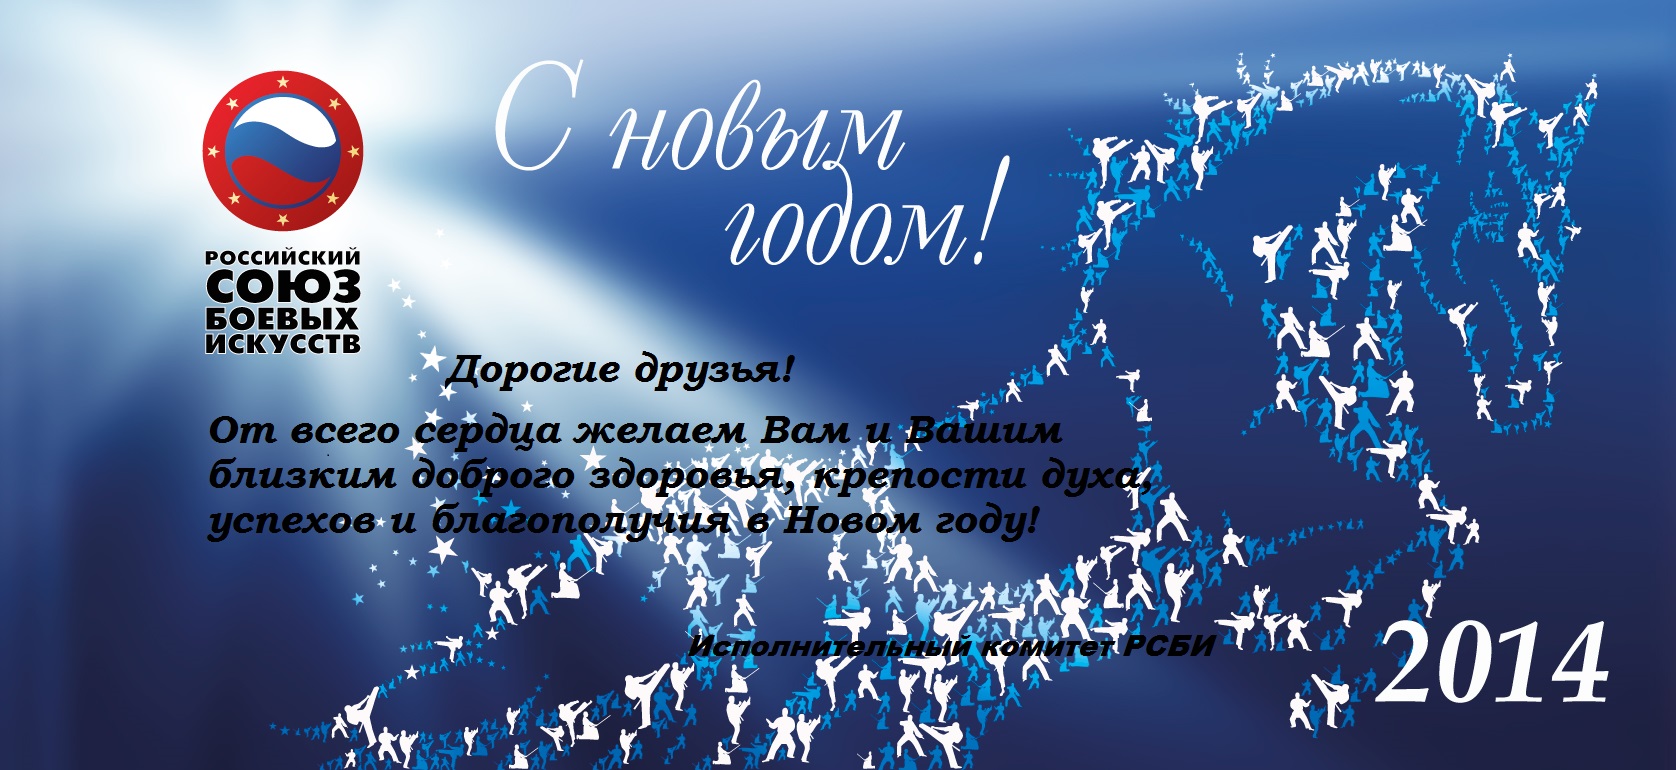 http://sbirb.combatsd.ru/images/upload/Поздравление-с-Новым-годом.jpg